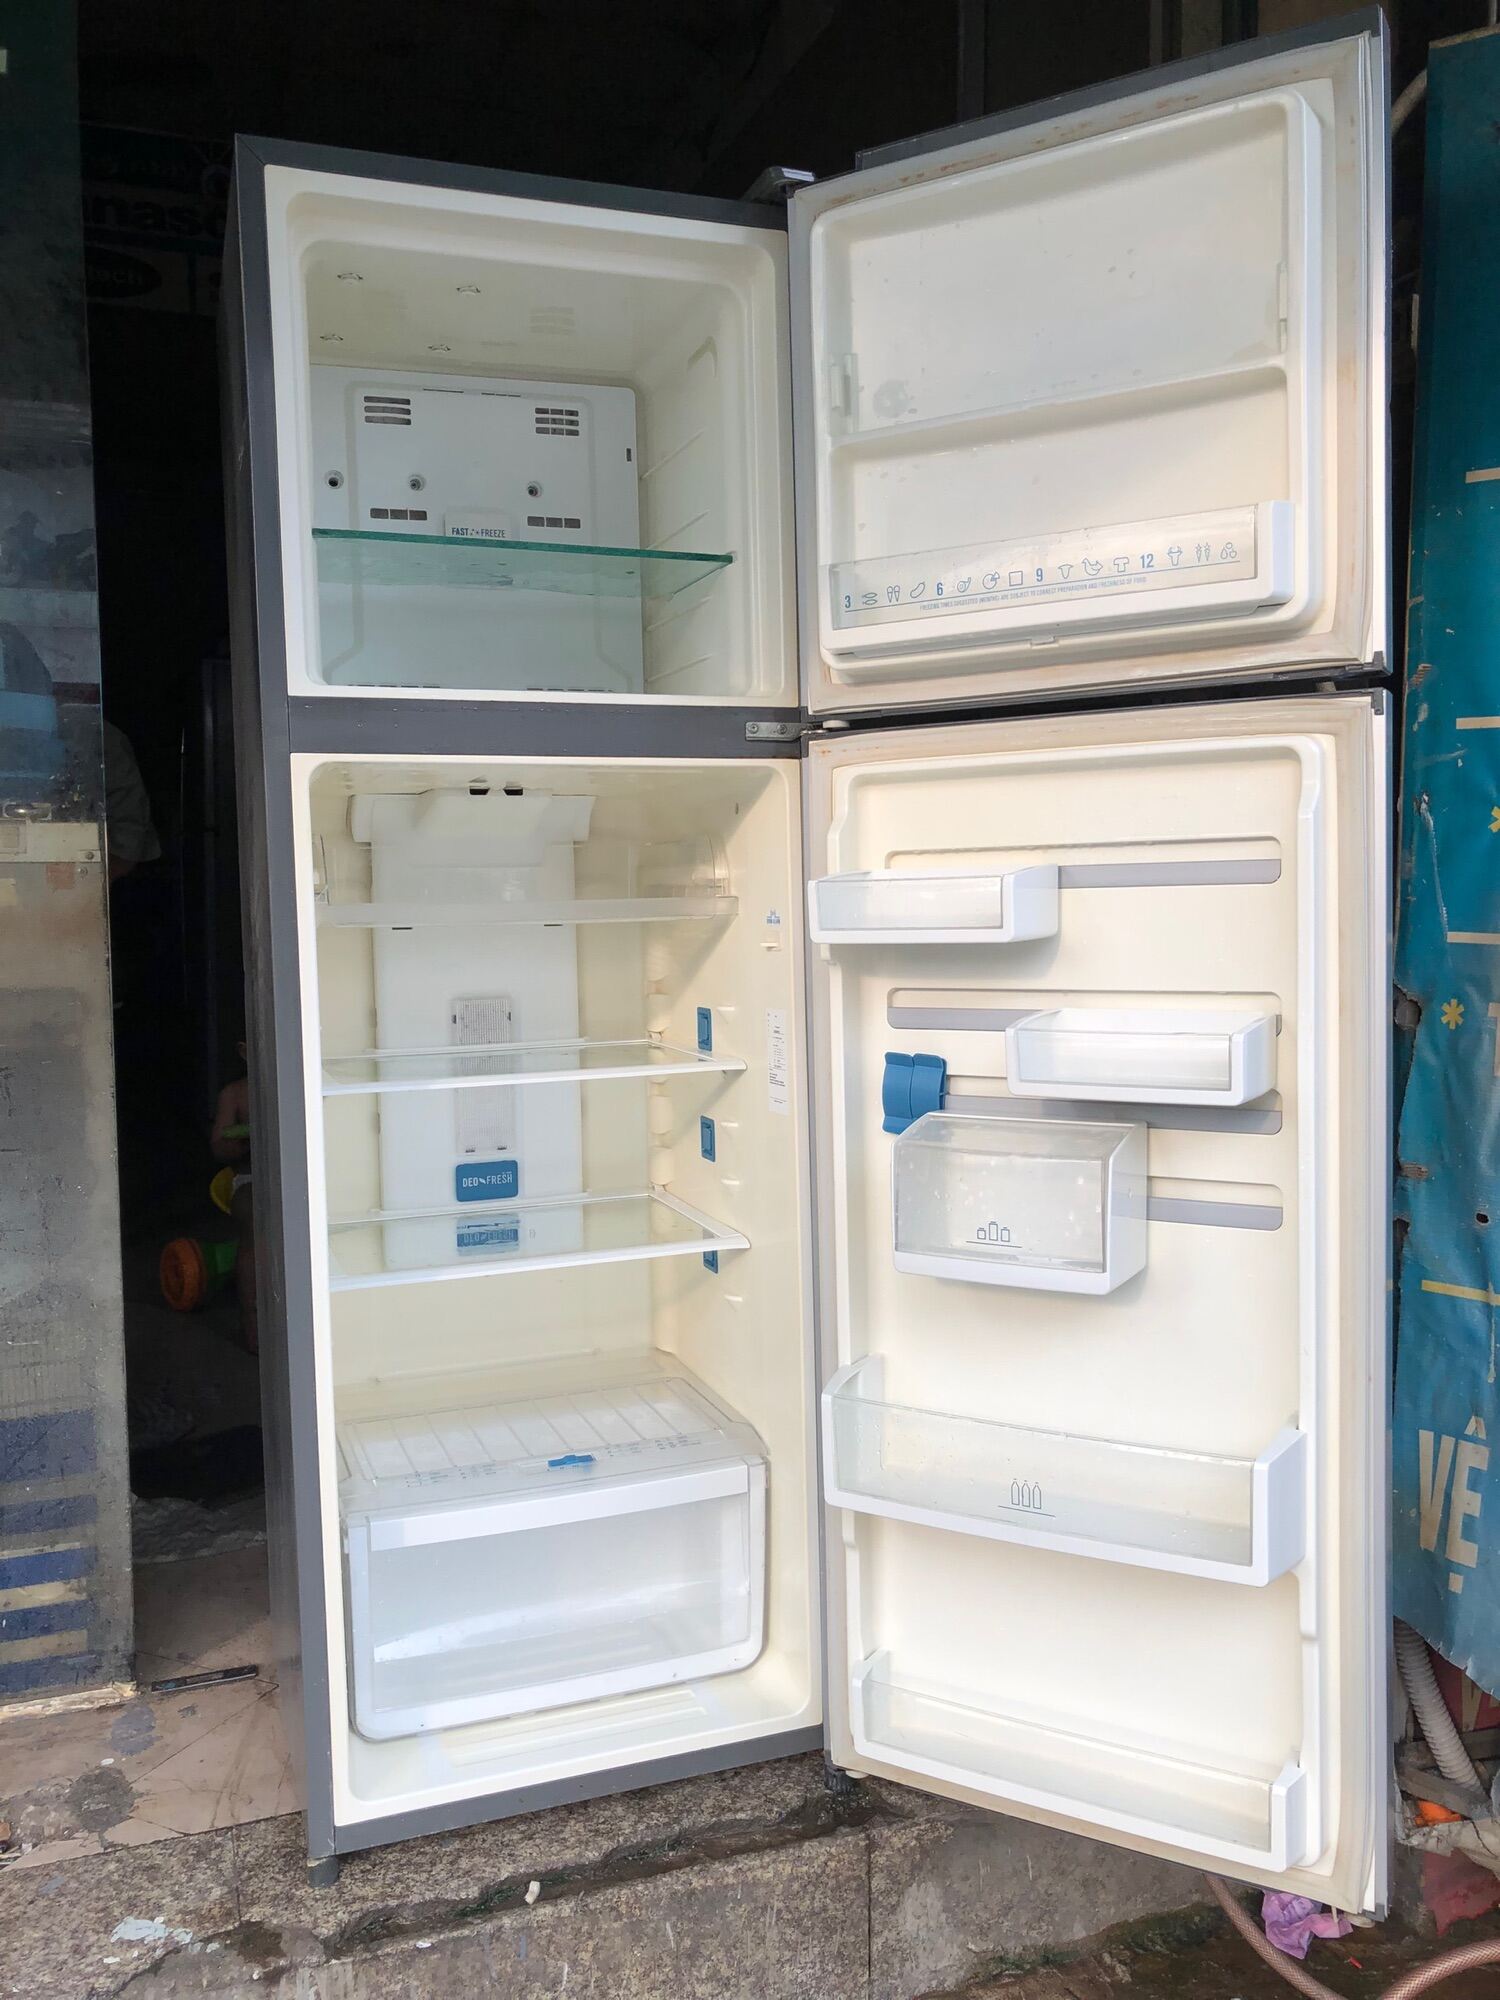 Tủ lạnh Electrolux 255 lít